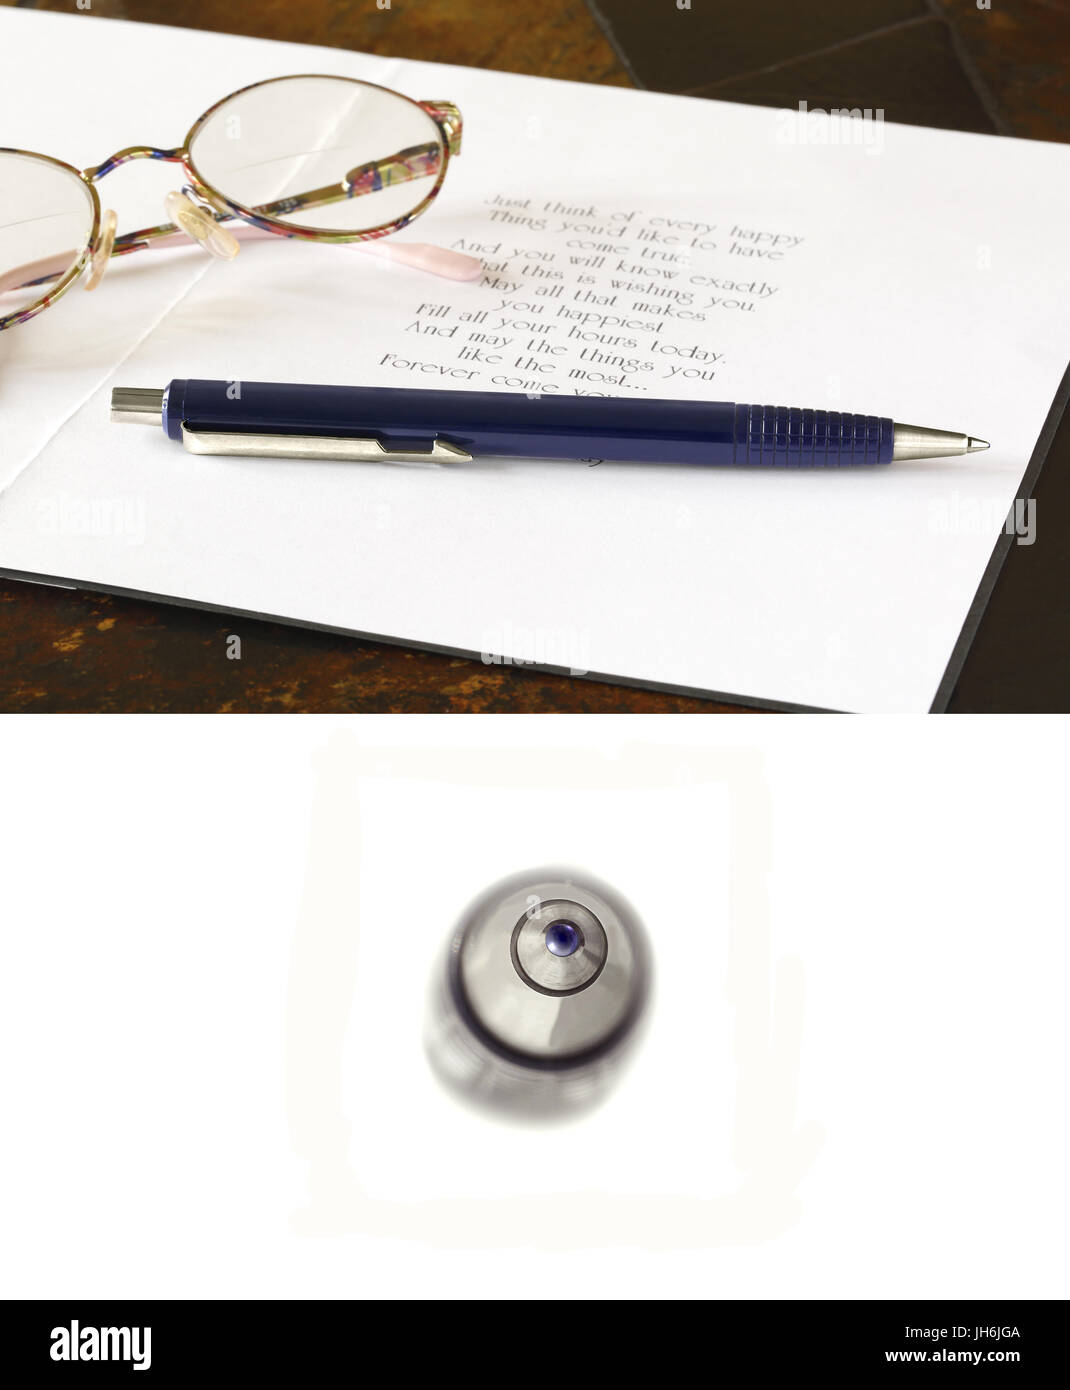 Un 'indovinare che cosa è' immagine di una penna a sfera con una spiegazione la foto mostra la penna e gli occhiali da lettura su un biglietto di auguri Foto Stock